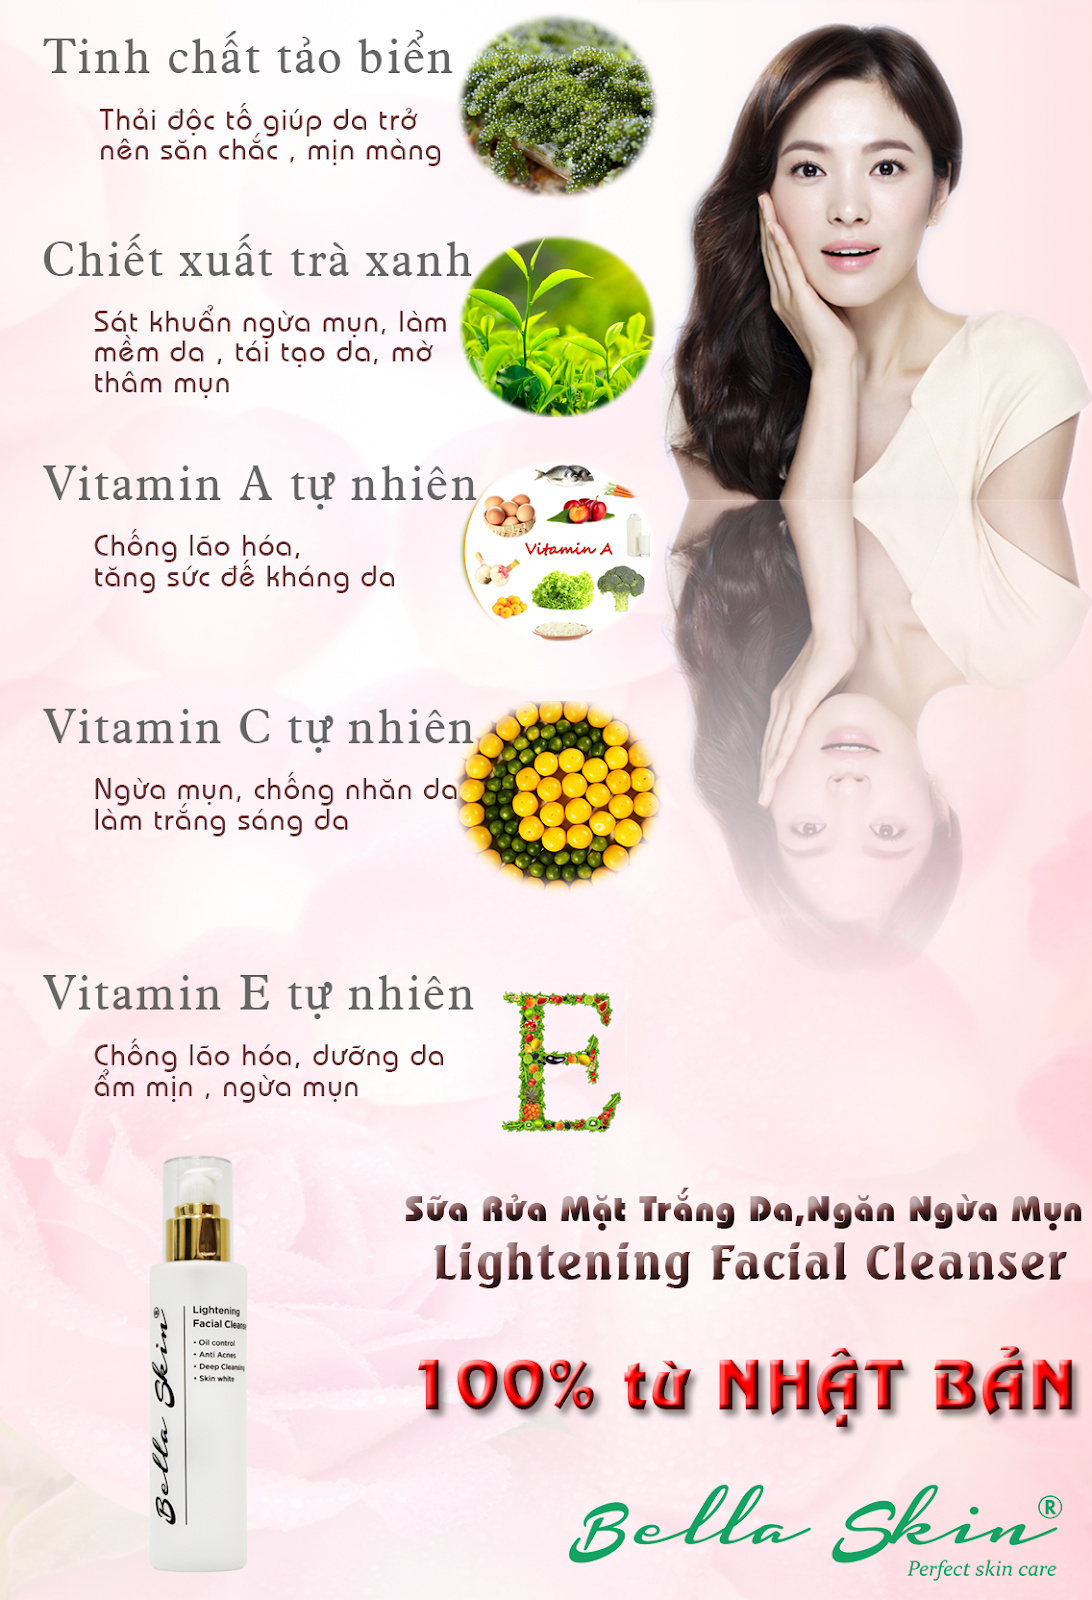 Sữa Rửa Mặt Trắng Da Ngăn Ngừa Mụn Bella Skin Lightening Facial Cleanser SO-koBZpAfTDEXjiDCCqS7Do26hy2HYuBFZ6qM1PRZxvROIdIyrMOQHY8laI5Dzgk0mV9ocqHRBv7WK7HjyfAKYBEmm53A0RupHVhUTCBMcosrzidM0tWMArQ94P9e3FUSBNq3rp